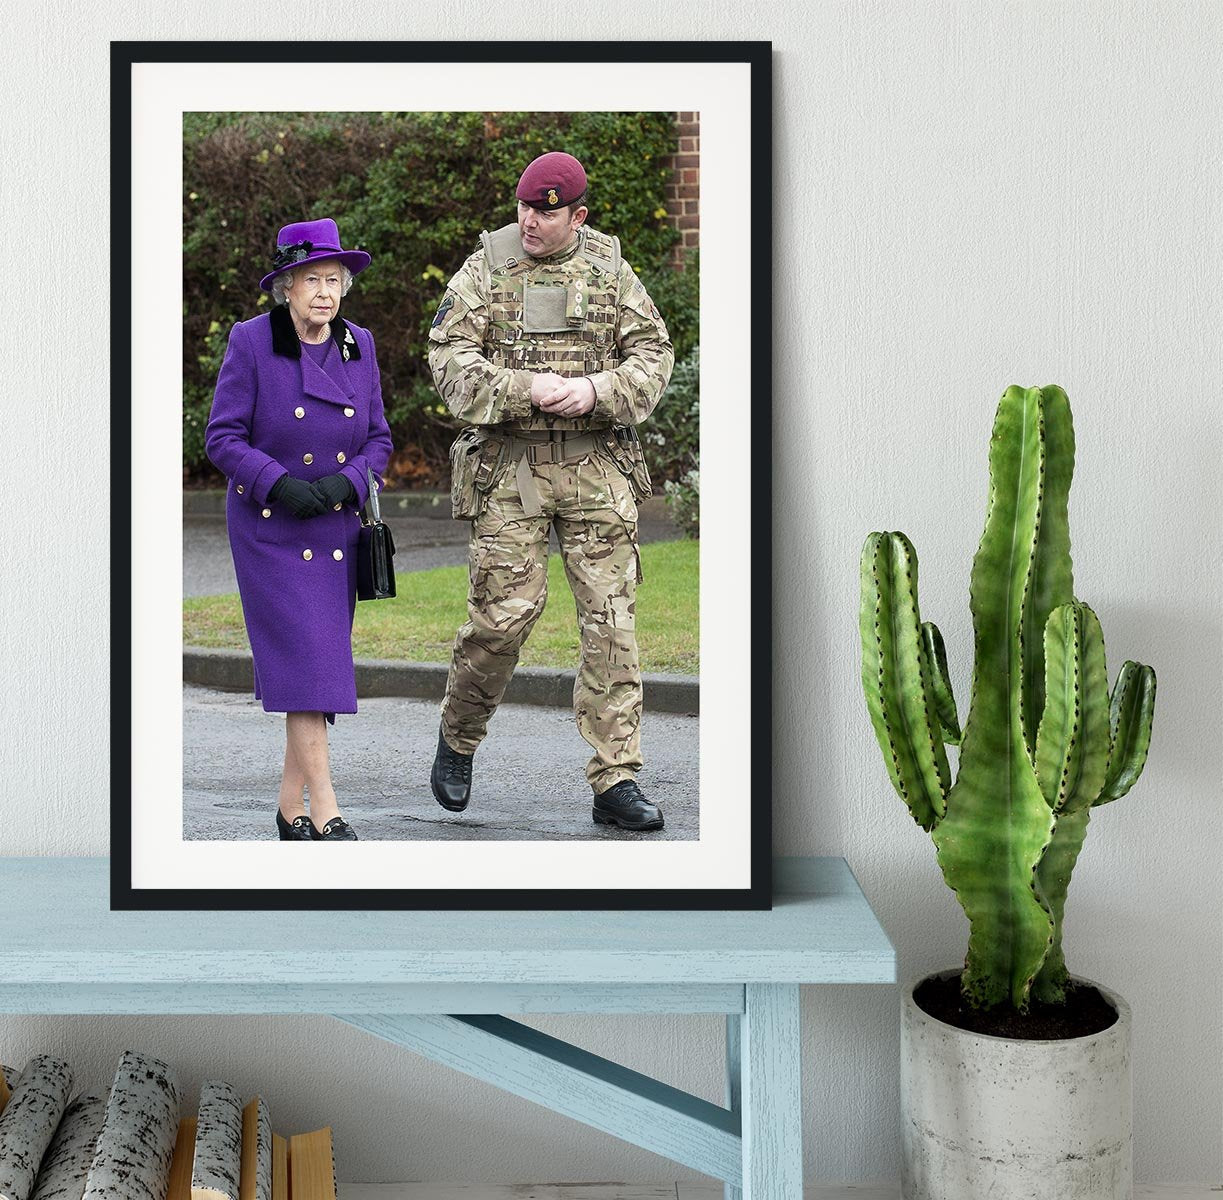 Queen Elizabeth II meeting members of the Household Cavalry Framed Print - Canvas Art Rocks - 1